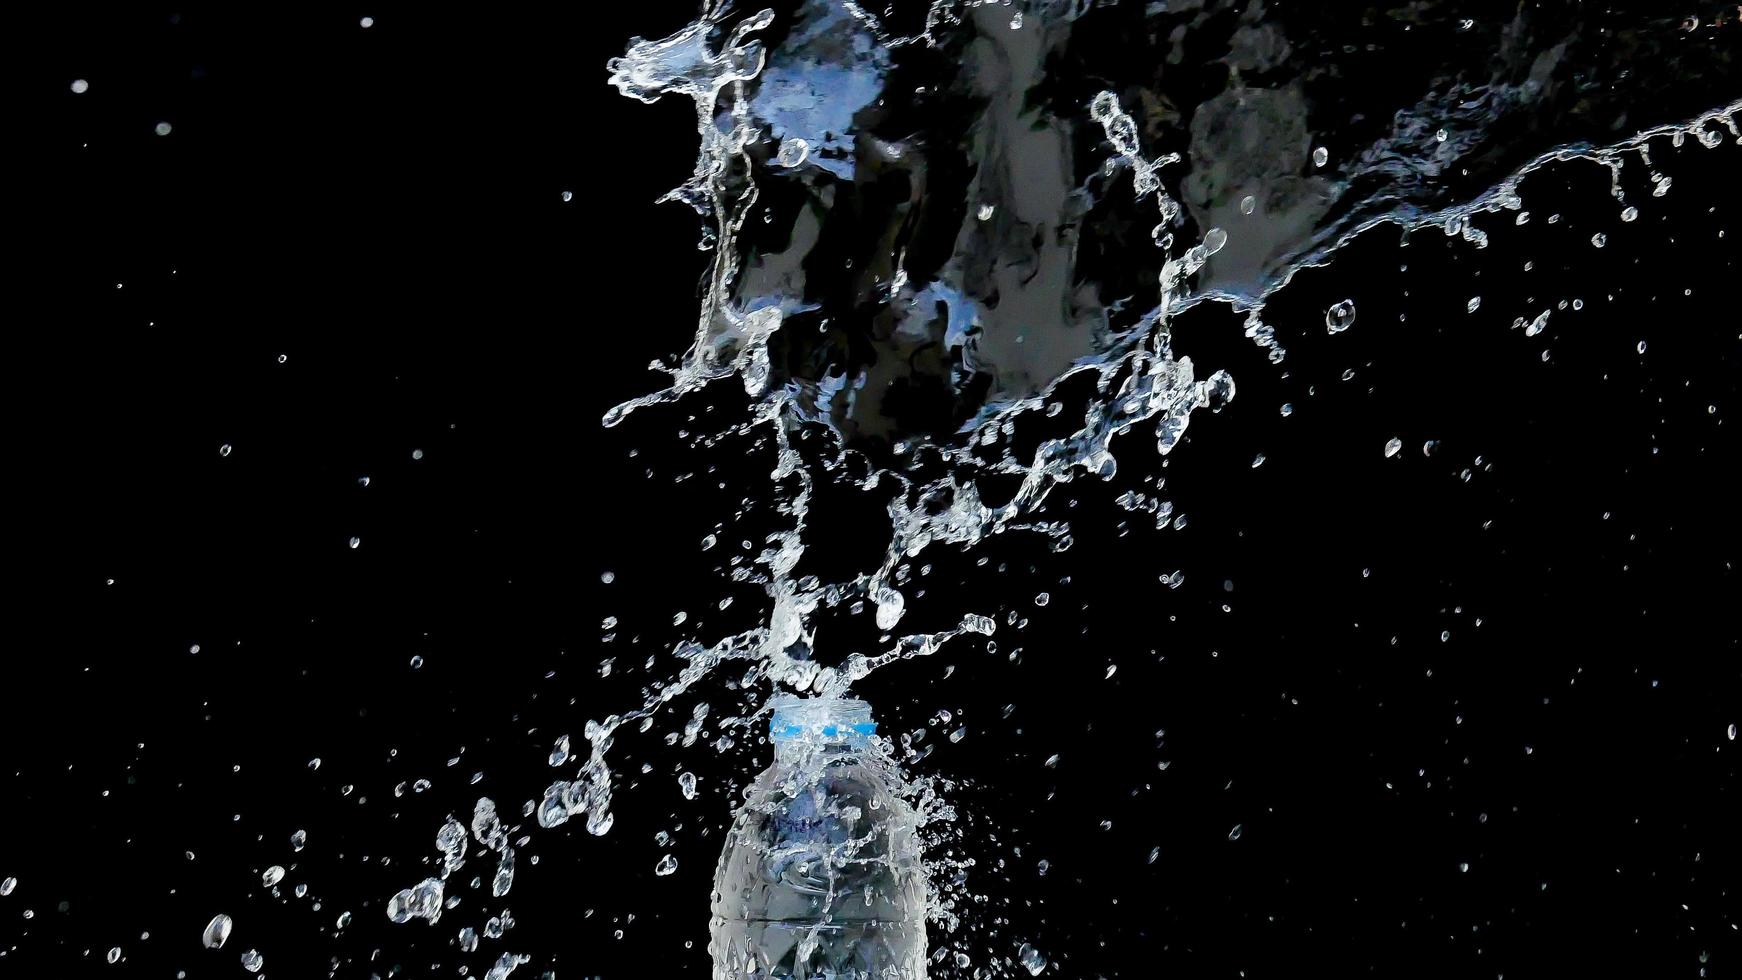 abstracte waterstraal stort neer op een zwarte achtergrond foto